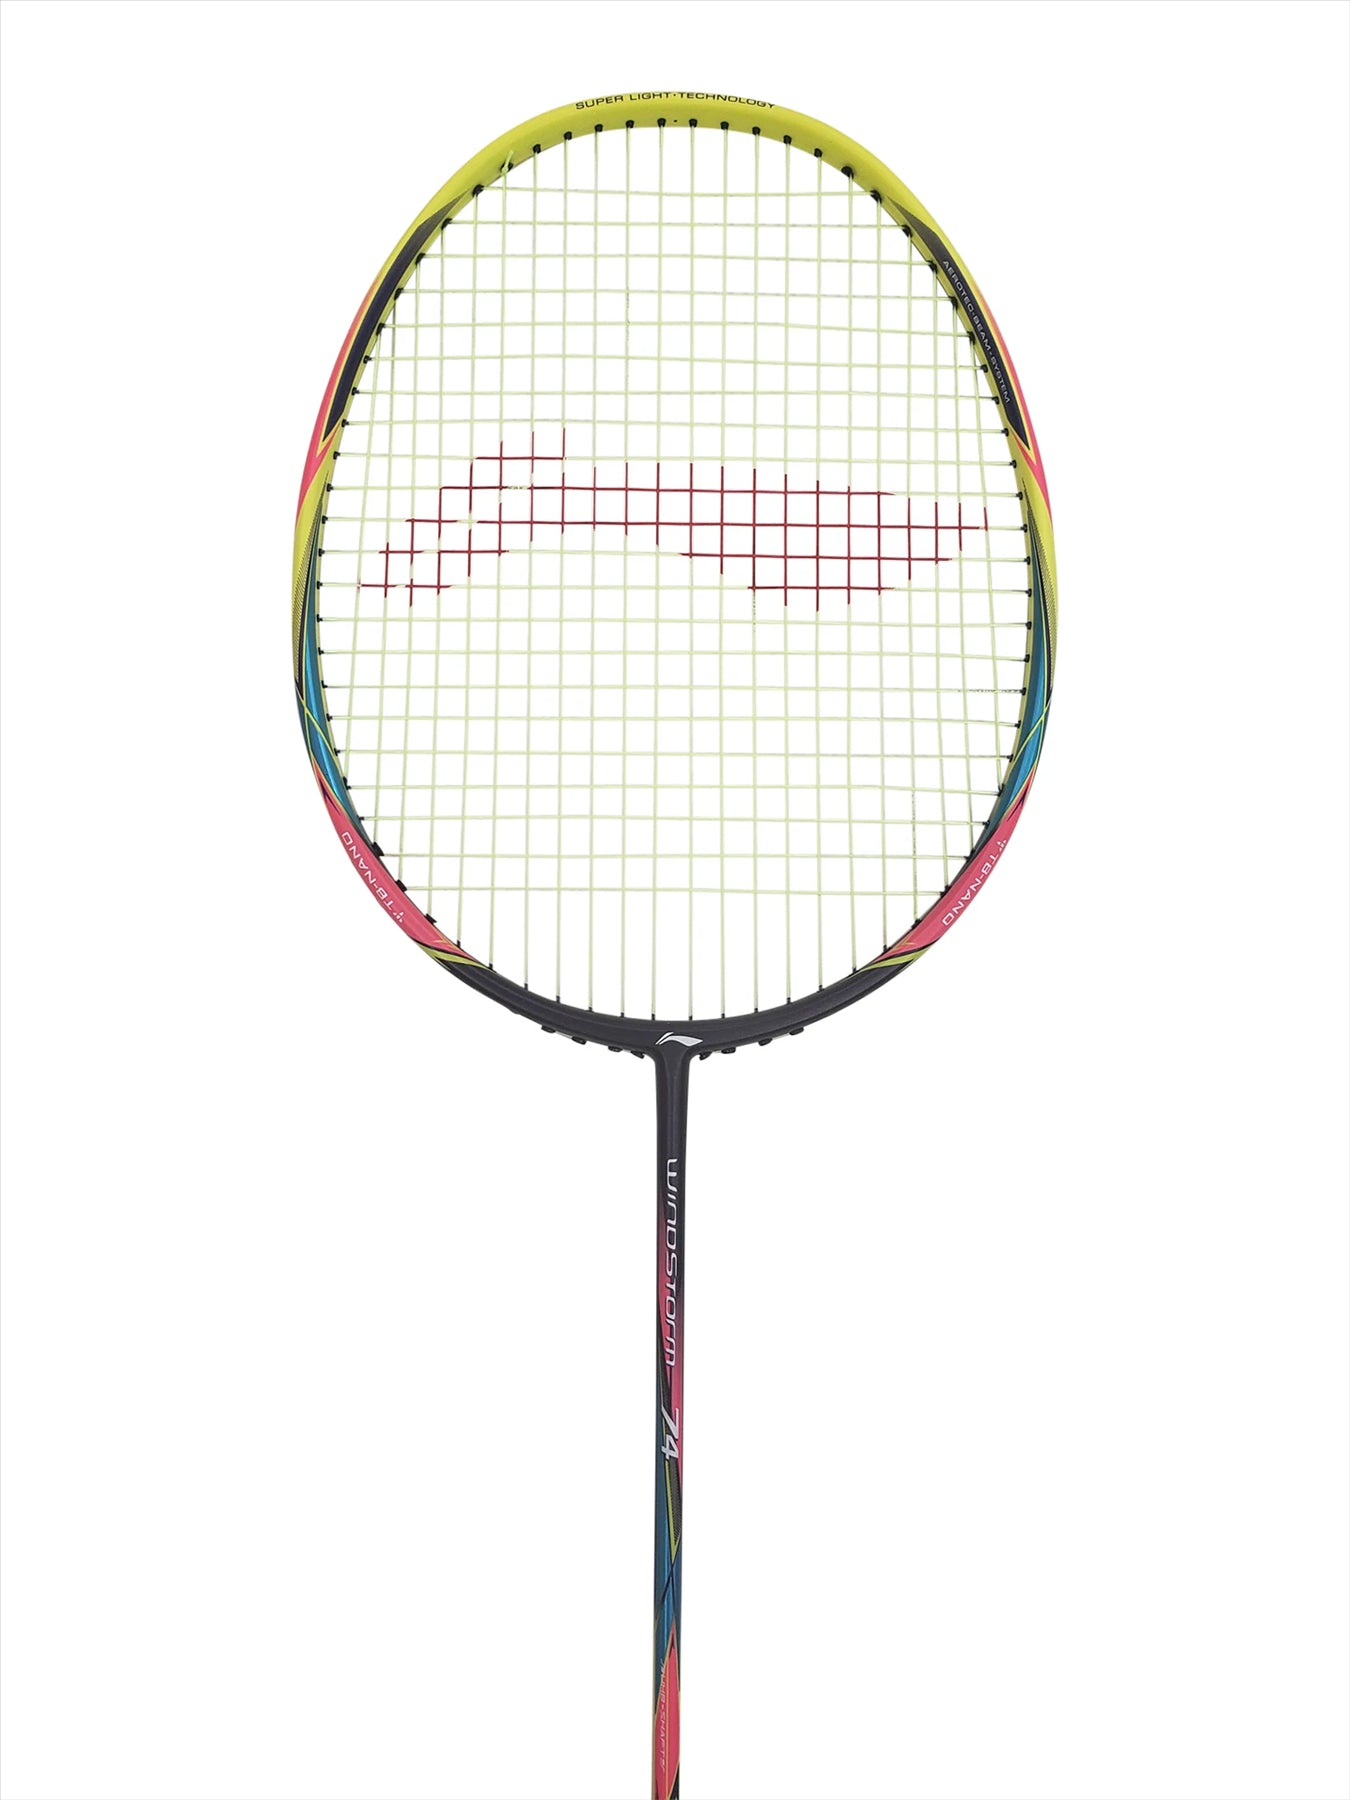 Li-Ning Windstorm 74 Badminton Racket - Yellow